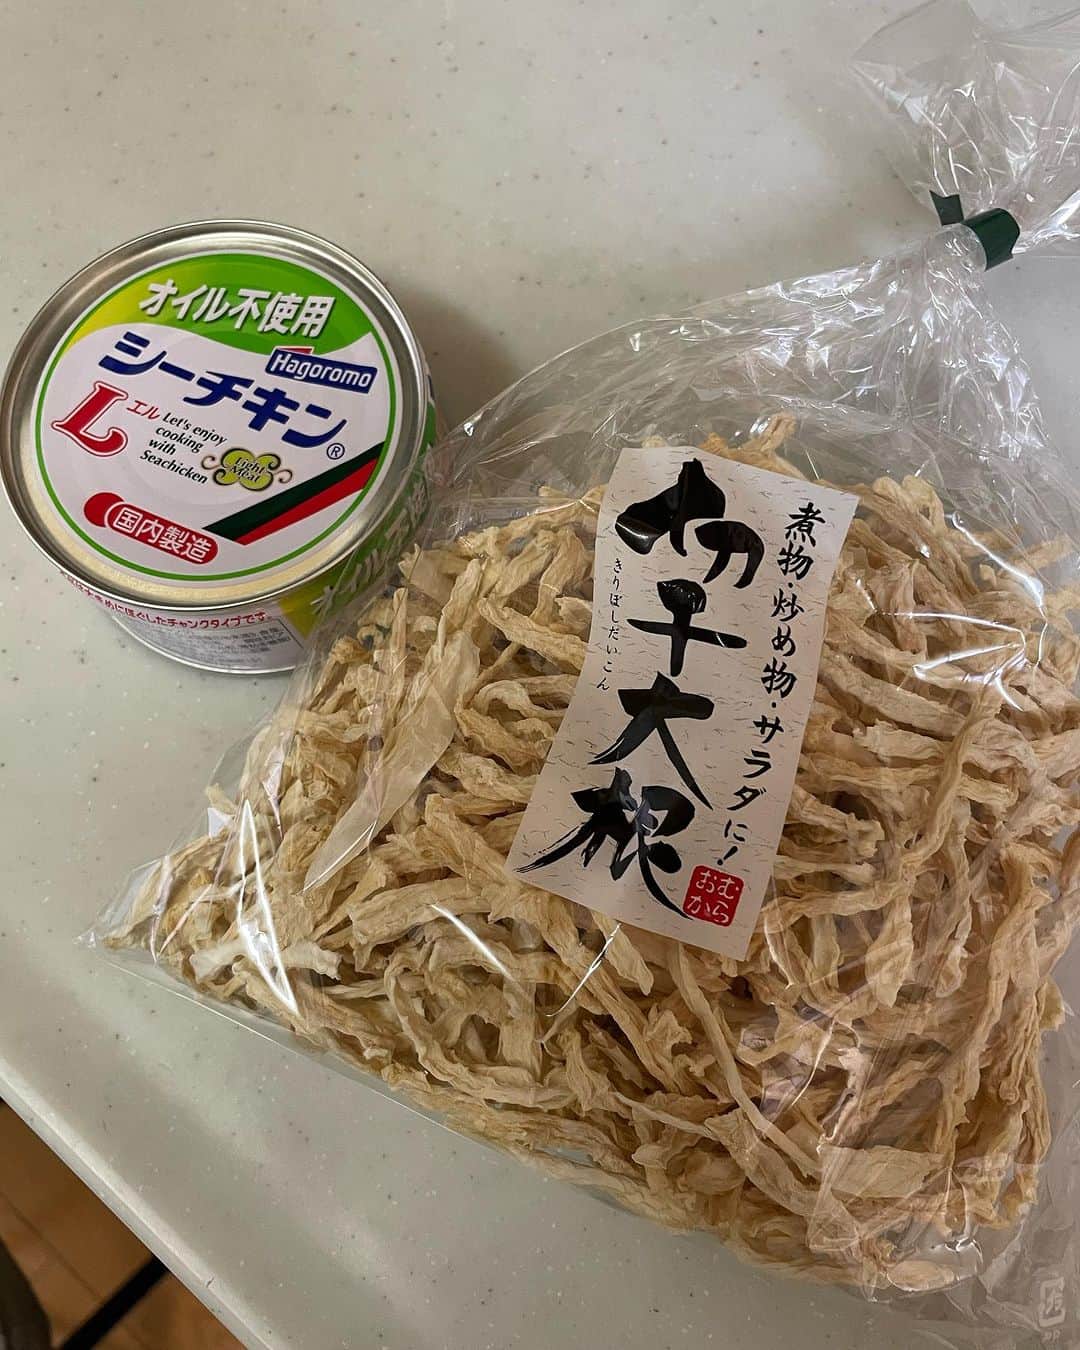 飯島直子さんのインスタグラム写真 - (飯島直子Instagram)「こんばんは^ - ^♪  花木いかがお過ごしですか  祭日と聞くと、明日が土曜と勘違いしてしまいそうです^ - ^  今日は汗ばむ陽気でしたね  汗はかいてませんが、すこしキモチに余裕があったので切り干し大根のサラダを作りました  ツナ缶とネギ、マヨネーズ、しょうゆ、からし、塩胡椒だけのカンタンなものです  日もちもして、ポリポリまあまあおいしいです  三日以降はあまり手がのびませんが^_^  31.1.2日のへんじすこしです＾＾  mamako_ys６３才誕生日おめでとう♪ 人生で今日が一番若い日^ - ^たくさんのことに挑戦して豊かな人生を送くろう♪健康に気をつけステキな一年にしてね♪ 挑戦したいこと…なんだろ^ - ^なんでも！  hiromi.t56才誕生日おめでとう♪介護中の両親に忘れられても…5人の子供たちからたくさんのお祝い♡ うれしいね^ ^いくつになっても年を重ねていける事は感謝だね^_^健康に気をつけて良い一年になりますように♪  eri.take.tada.y.t母８３才誕生日おめでとう♪ 甥っ子１０才♪土曜日誕生日会！忙しくなるね^ - ^ みんなでお祝いステキな時間過ごしてね♪ 元気で長生きしてね^ - ^  caori_４３才誕生日おめでとう♪あらら…キライな夫と、夫キライな思春期の娘と温泉旅行で憂鬱^^; 薬の準備やもろもろ大変だけど…ここはひとつ、 割り切って楽しんできちゃおう！行ってしまえば案外楽しめたりする^ - ^眼、大事にしてね ステキな一年になりますように♪  明日は息子の結婚式で東京に♪おめでとう！ 良い子に育った…立派な父親だった証だ^ - ^ 泣けちゃね^_^ステキな一日を過ごしてね♪ hideminamina！  jamster_junko！ココロ不調かな…？がんばりすぎないようにね(*´-`)オーナーは大変だから！  chikoちゃん来週退院おめでとう！良い決断したし 良い出会いまで^ - ^リハビリもがんばってね 孫と遊び、旅行…いっぱい叶えてね！  令子、クミコも…一緒にがんばろうねᕦ(ò_óˇ)ᕤ  花粉用のメガネしよう！そのみ！  りん♪  aki10297♡  kimichannoopy〜ちゃんと見てるよぉ〜^_^  ruminee929！なんと！ありがとう^ - ^♪ すきなラーメンは…サッポロ一番塩と味噌、うまかっちゃんだよ！  まさかの息子フットサルに参戦！おつかれ^ - ^ すみか！腰大丈夫？！  母が認知症一人暮らし、特養老人ホームに…罪悪感も うん、むずかしいよね…ただお母さんの安全確保するためには良い選択かなとおもう、 一度お母さん連れて見学へ行ってみたらどうかな？ 「ここは楽しい所」というイメージを持ってもらうために…、わたしが同じ立場になってもこの選択をするとおもう、お母さんの命を第一優先に 一歩踏み出してみよう…kaorin178！  真喜！頑張って歯医者いこう^ - ^  きくこと喜久恵♪  マッサージ寝てもいいの？ガセ！よかった(*´-`) ありがとう♪浜のぴょんぴょん！ソーラン節も泣けたね(´∀｀*)  ちえ！30年前にハワイで…声かけてよ^ - ^  阪神ファンのひとおめでとう^_^  すごい試合でした  両チームすばらしかったですね  テレビを見ていたらこんな時間に  今日も一日お疲れさまでした  寒暖差気をつけてね  みんなゆっくり眠れますように  おやすみなさい╰(*´︶`*)╯♡  また明日♡♡」11月2日 21時52分 - naoko_iijima_705_official